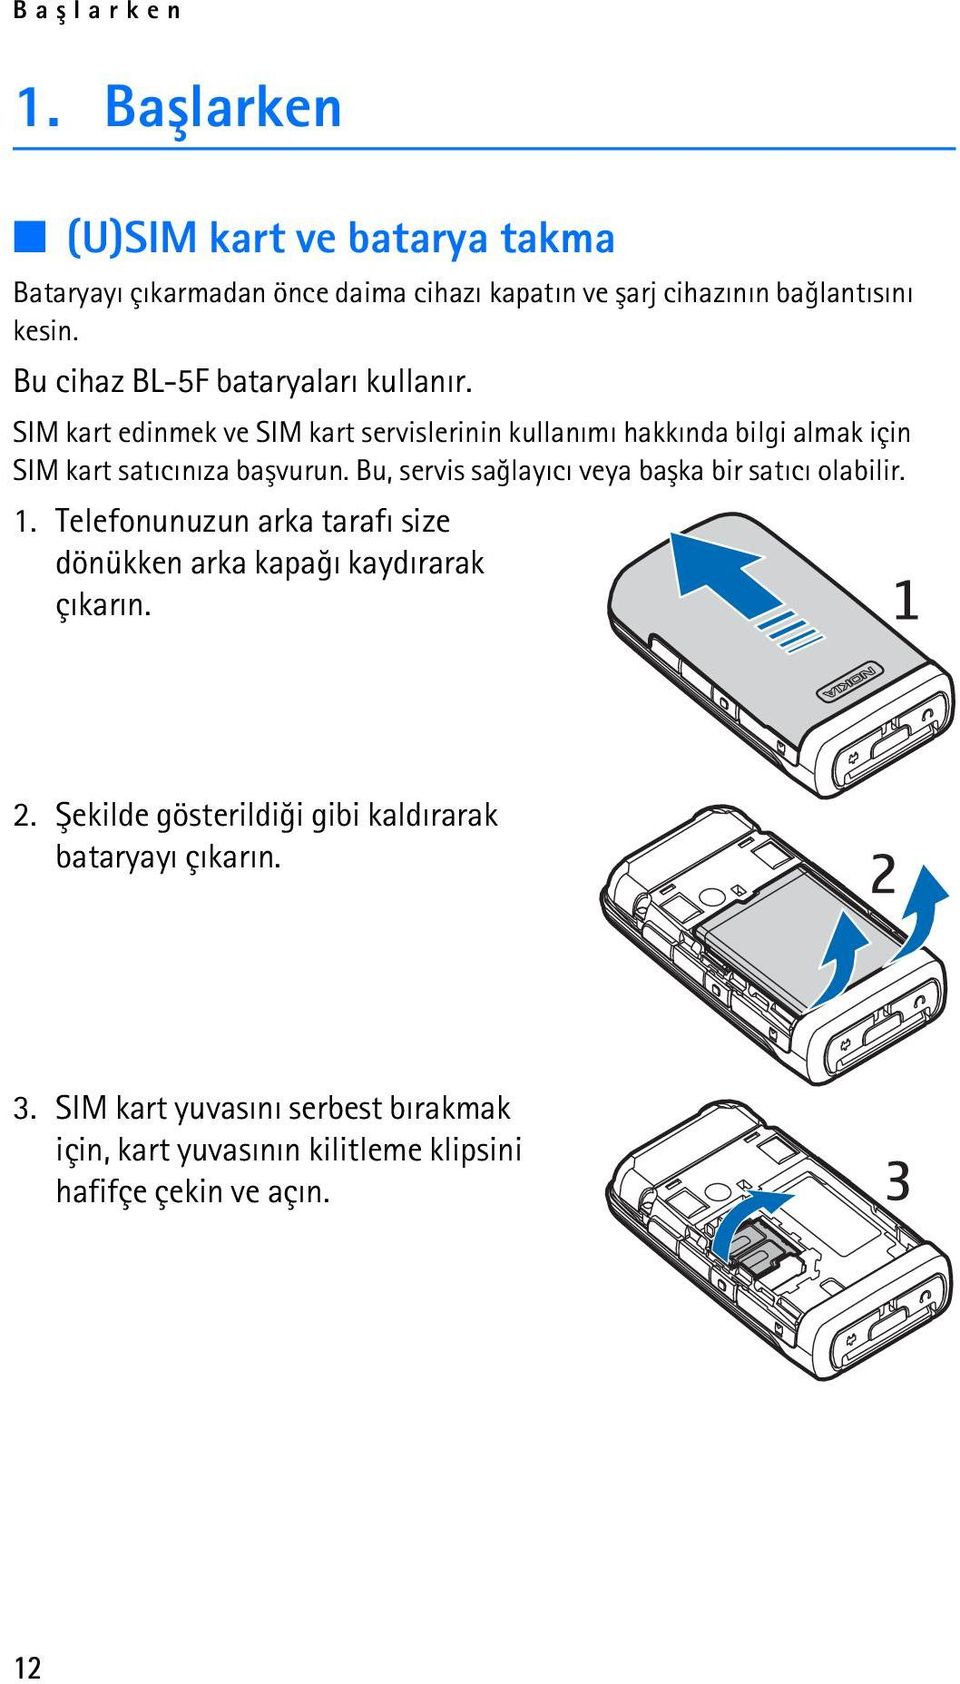 SIM kart edinmek ve SIM kart servislerinin kullanýmý hakkýnda bilgi almak için SIM kart satýcýnýza baþvurun.